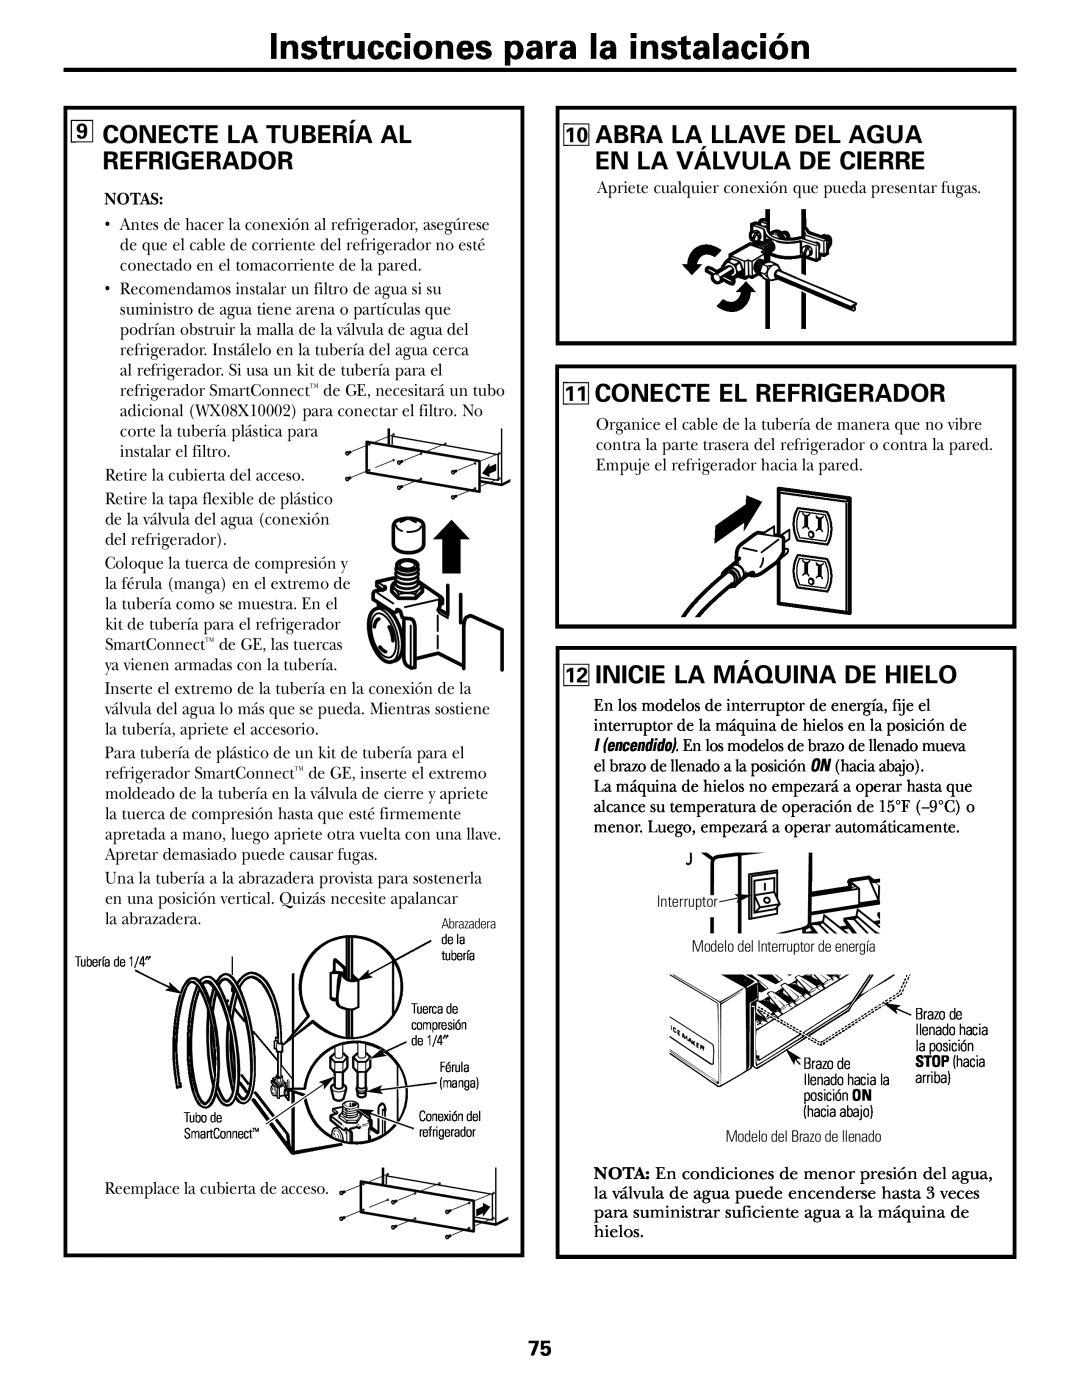 GE 17 operating instructions 9CONECTE LA TUBERÍA AL REFRIGERADOR, 11CONECTE EL REFRIGERADOR, 12INICIE LA MÁQUINA DE HIELO 